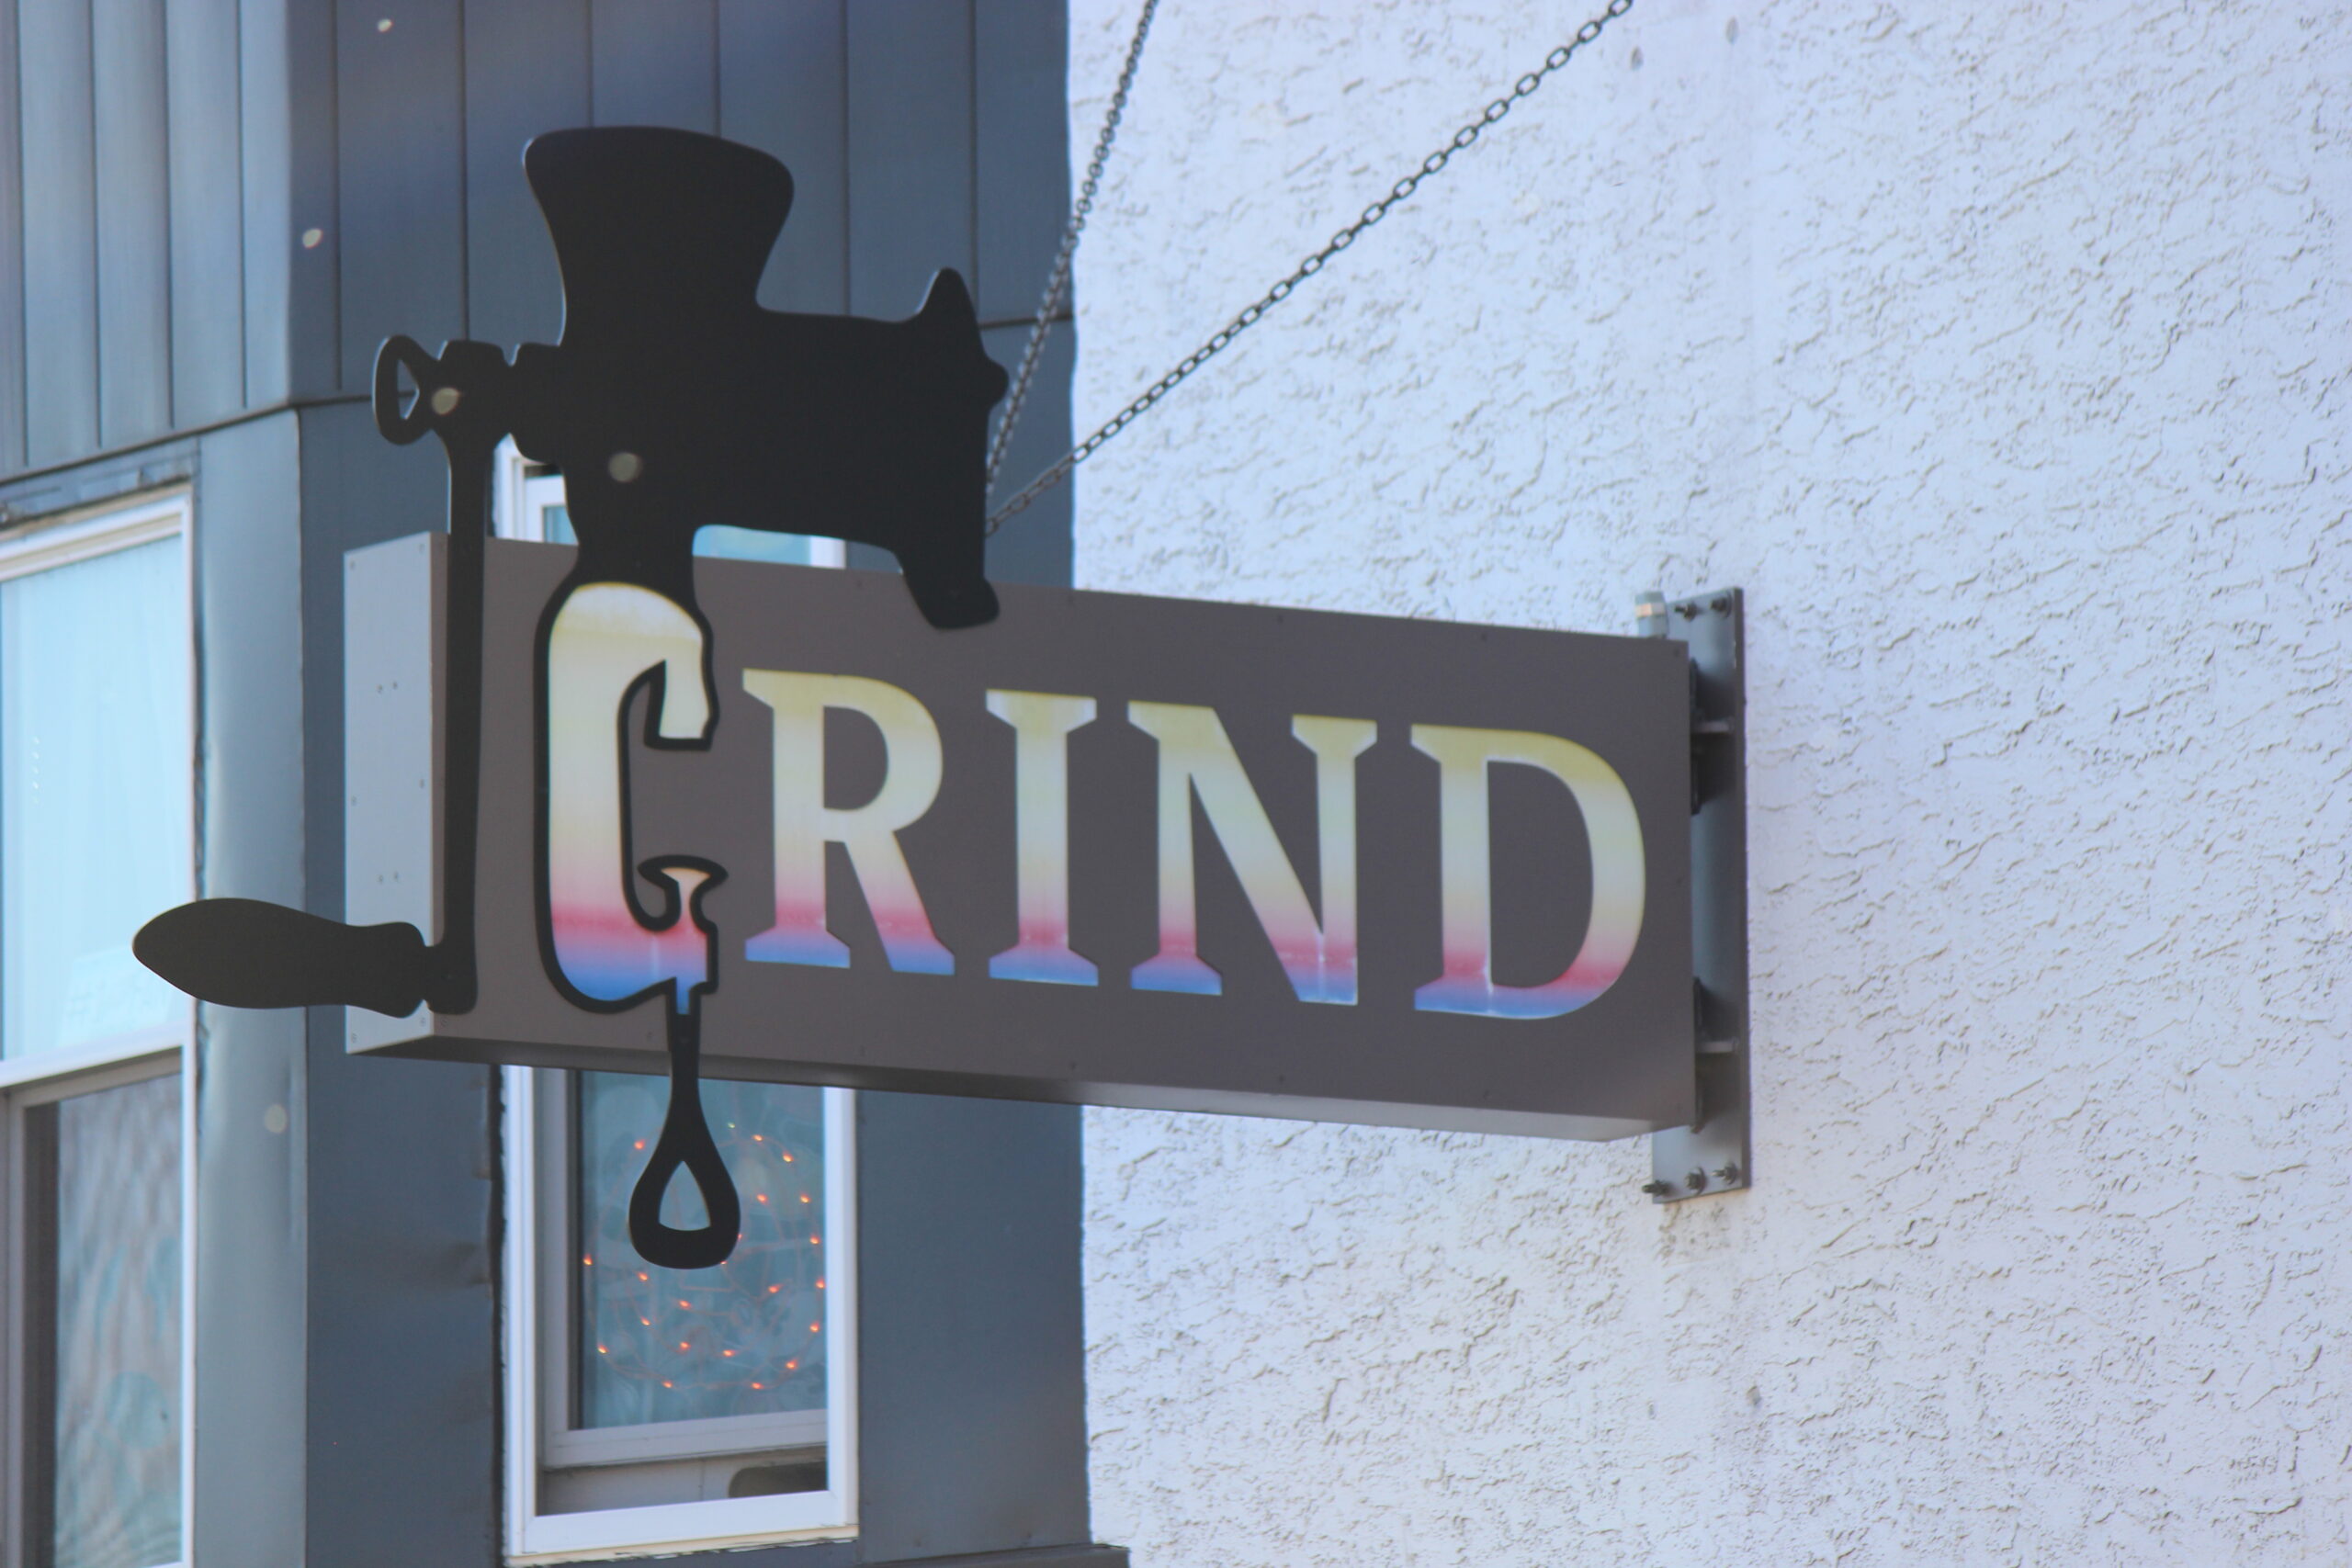 Grind Restaurant, Boyertown PA
